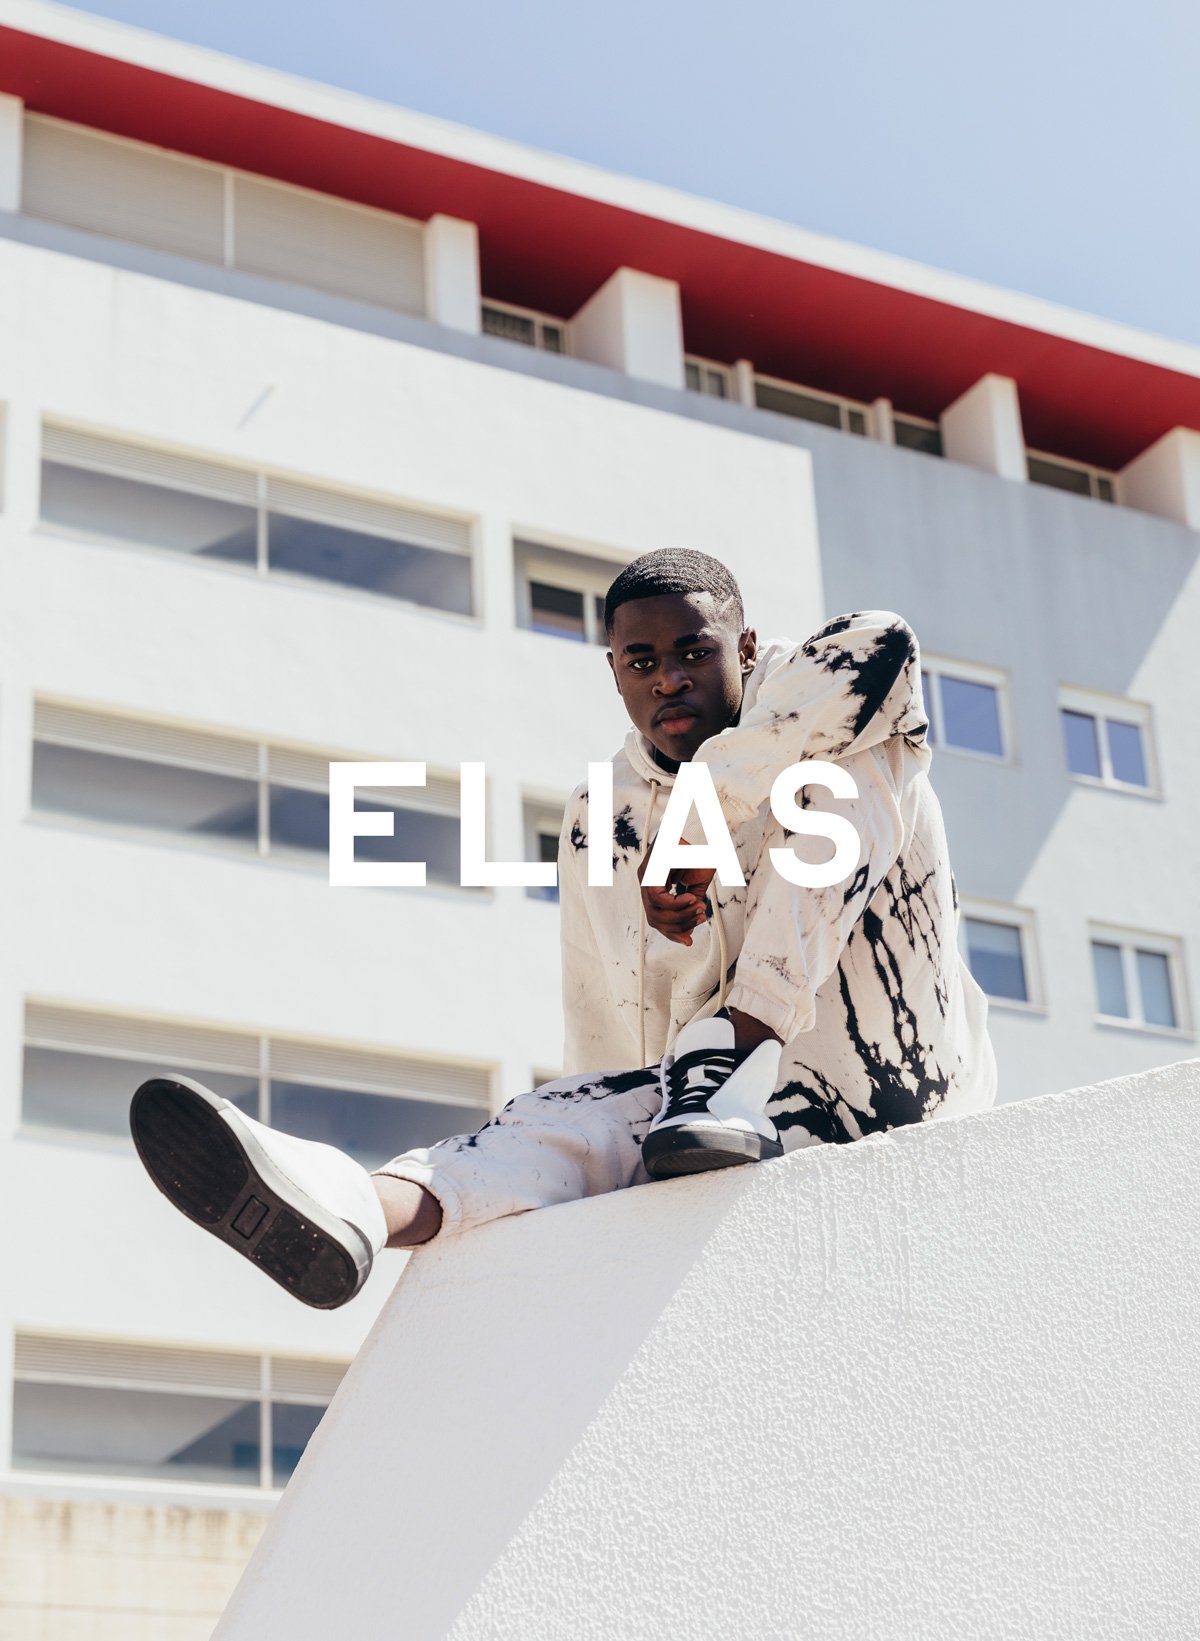 Elias Er sitzt an einer Wand und trägt Diverge sneakers, Förderung sozialer Auswirkungen und maßgefertigter Schuhe im Rahmen des IMAGINE-Projekts.